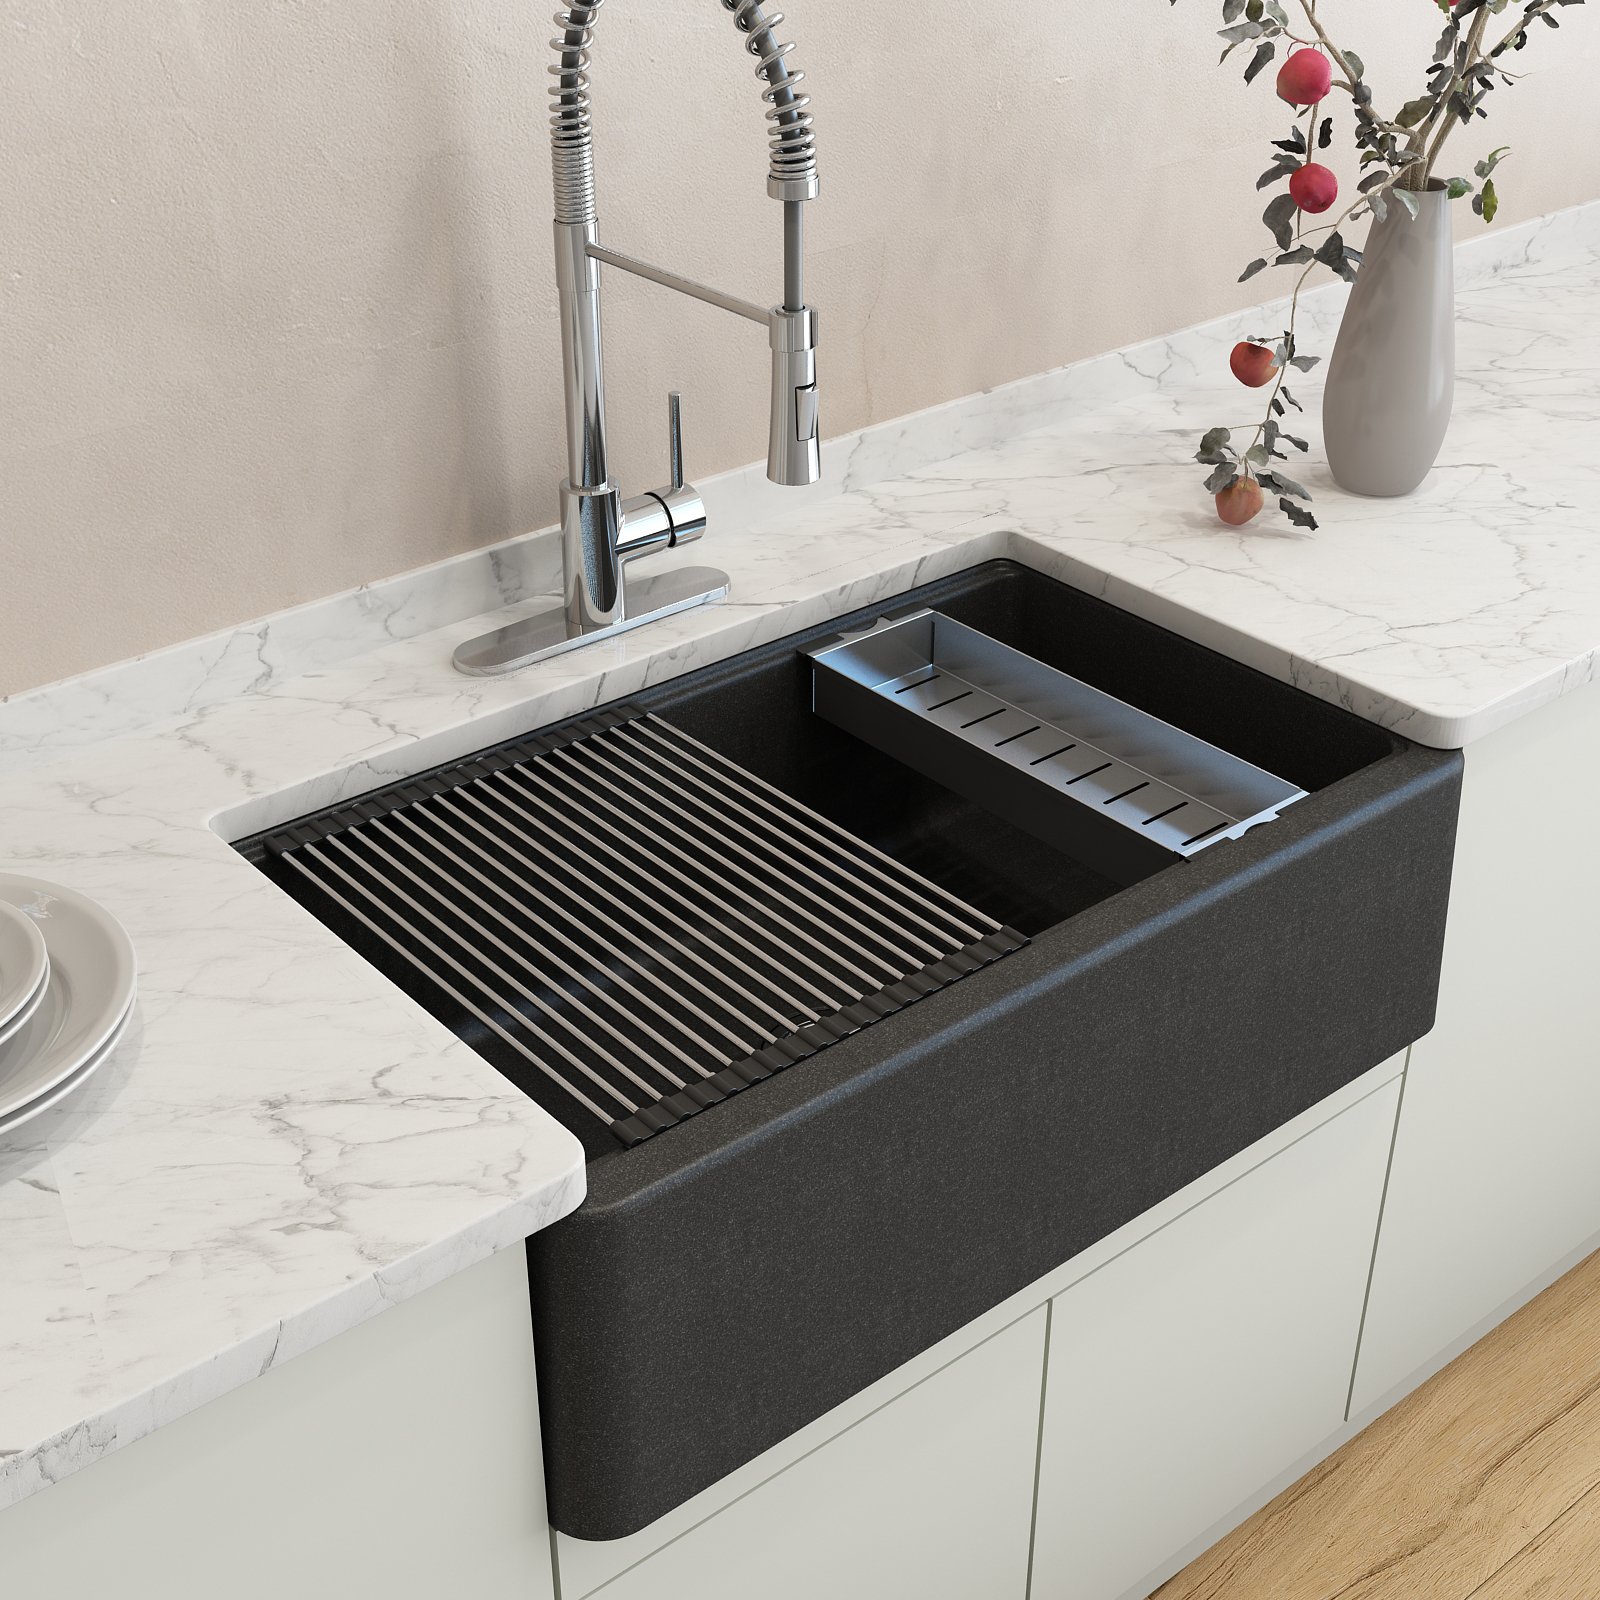 Colander for Granite Workstation Sinks